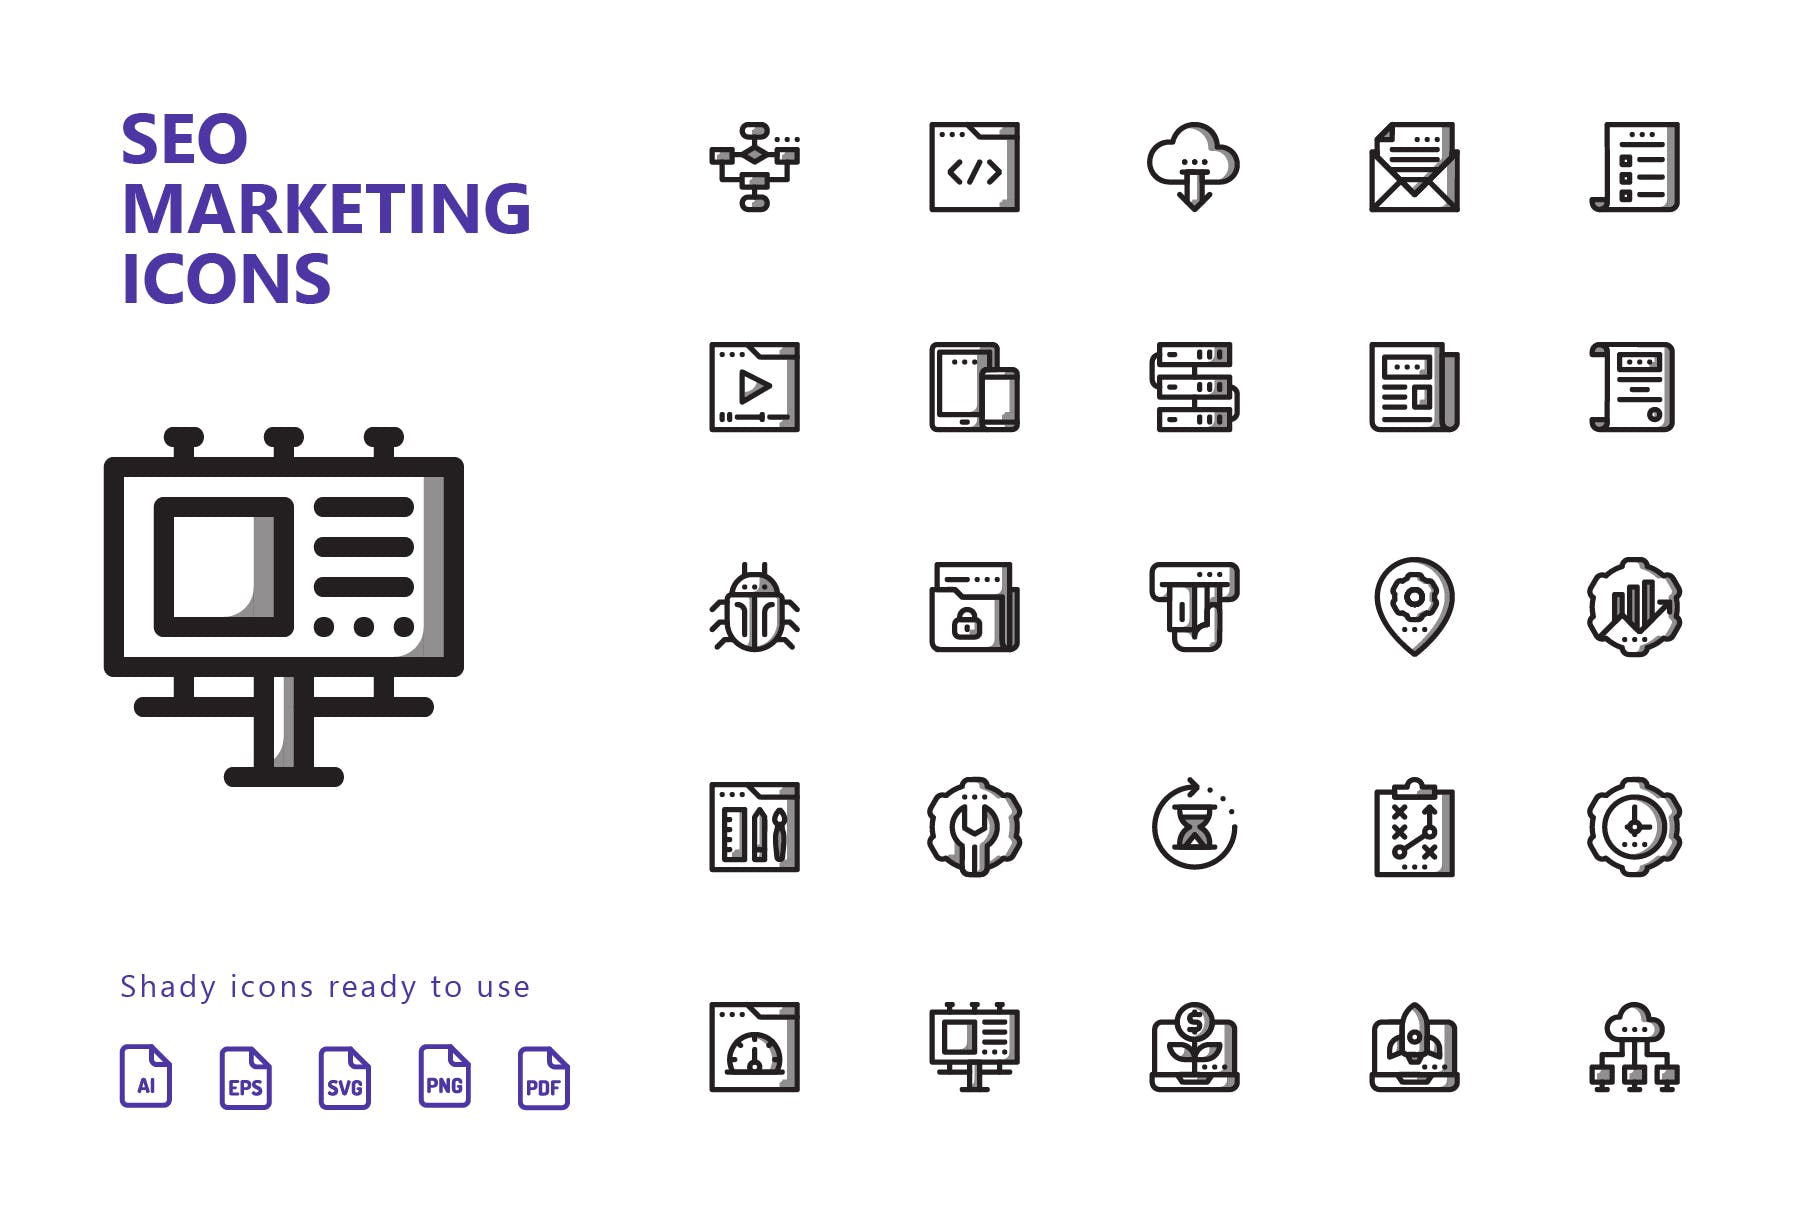 25枚SEO搜索引擎优化营销矢量阴影素材库精选图标v1 SEO Marketing Shady Icons插图(1)